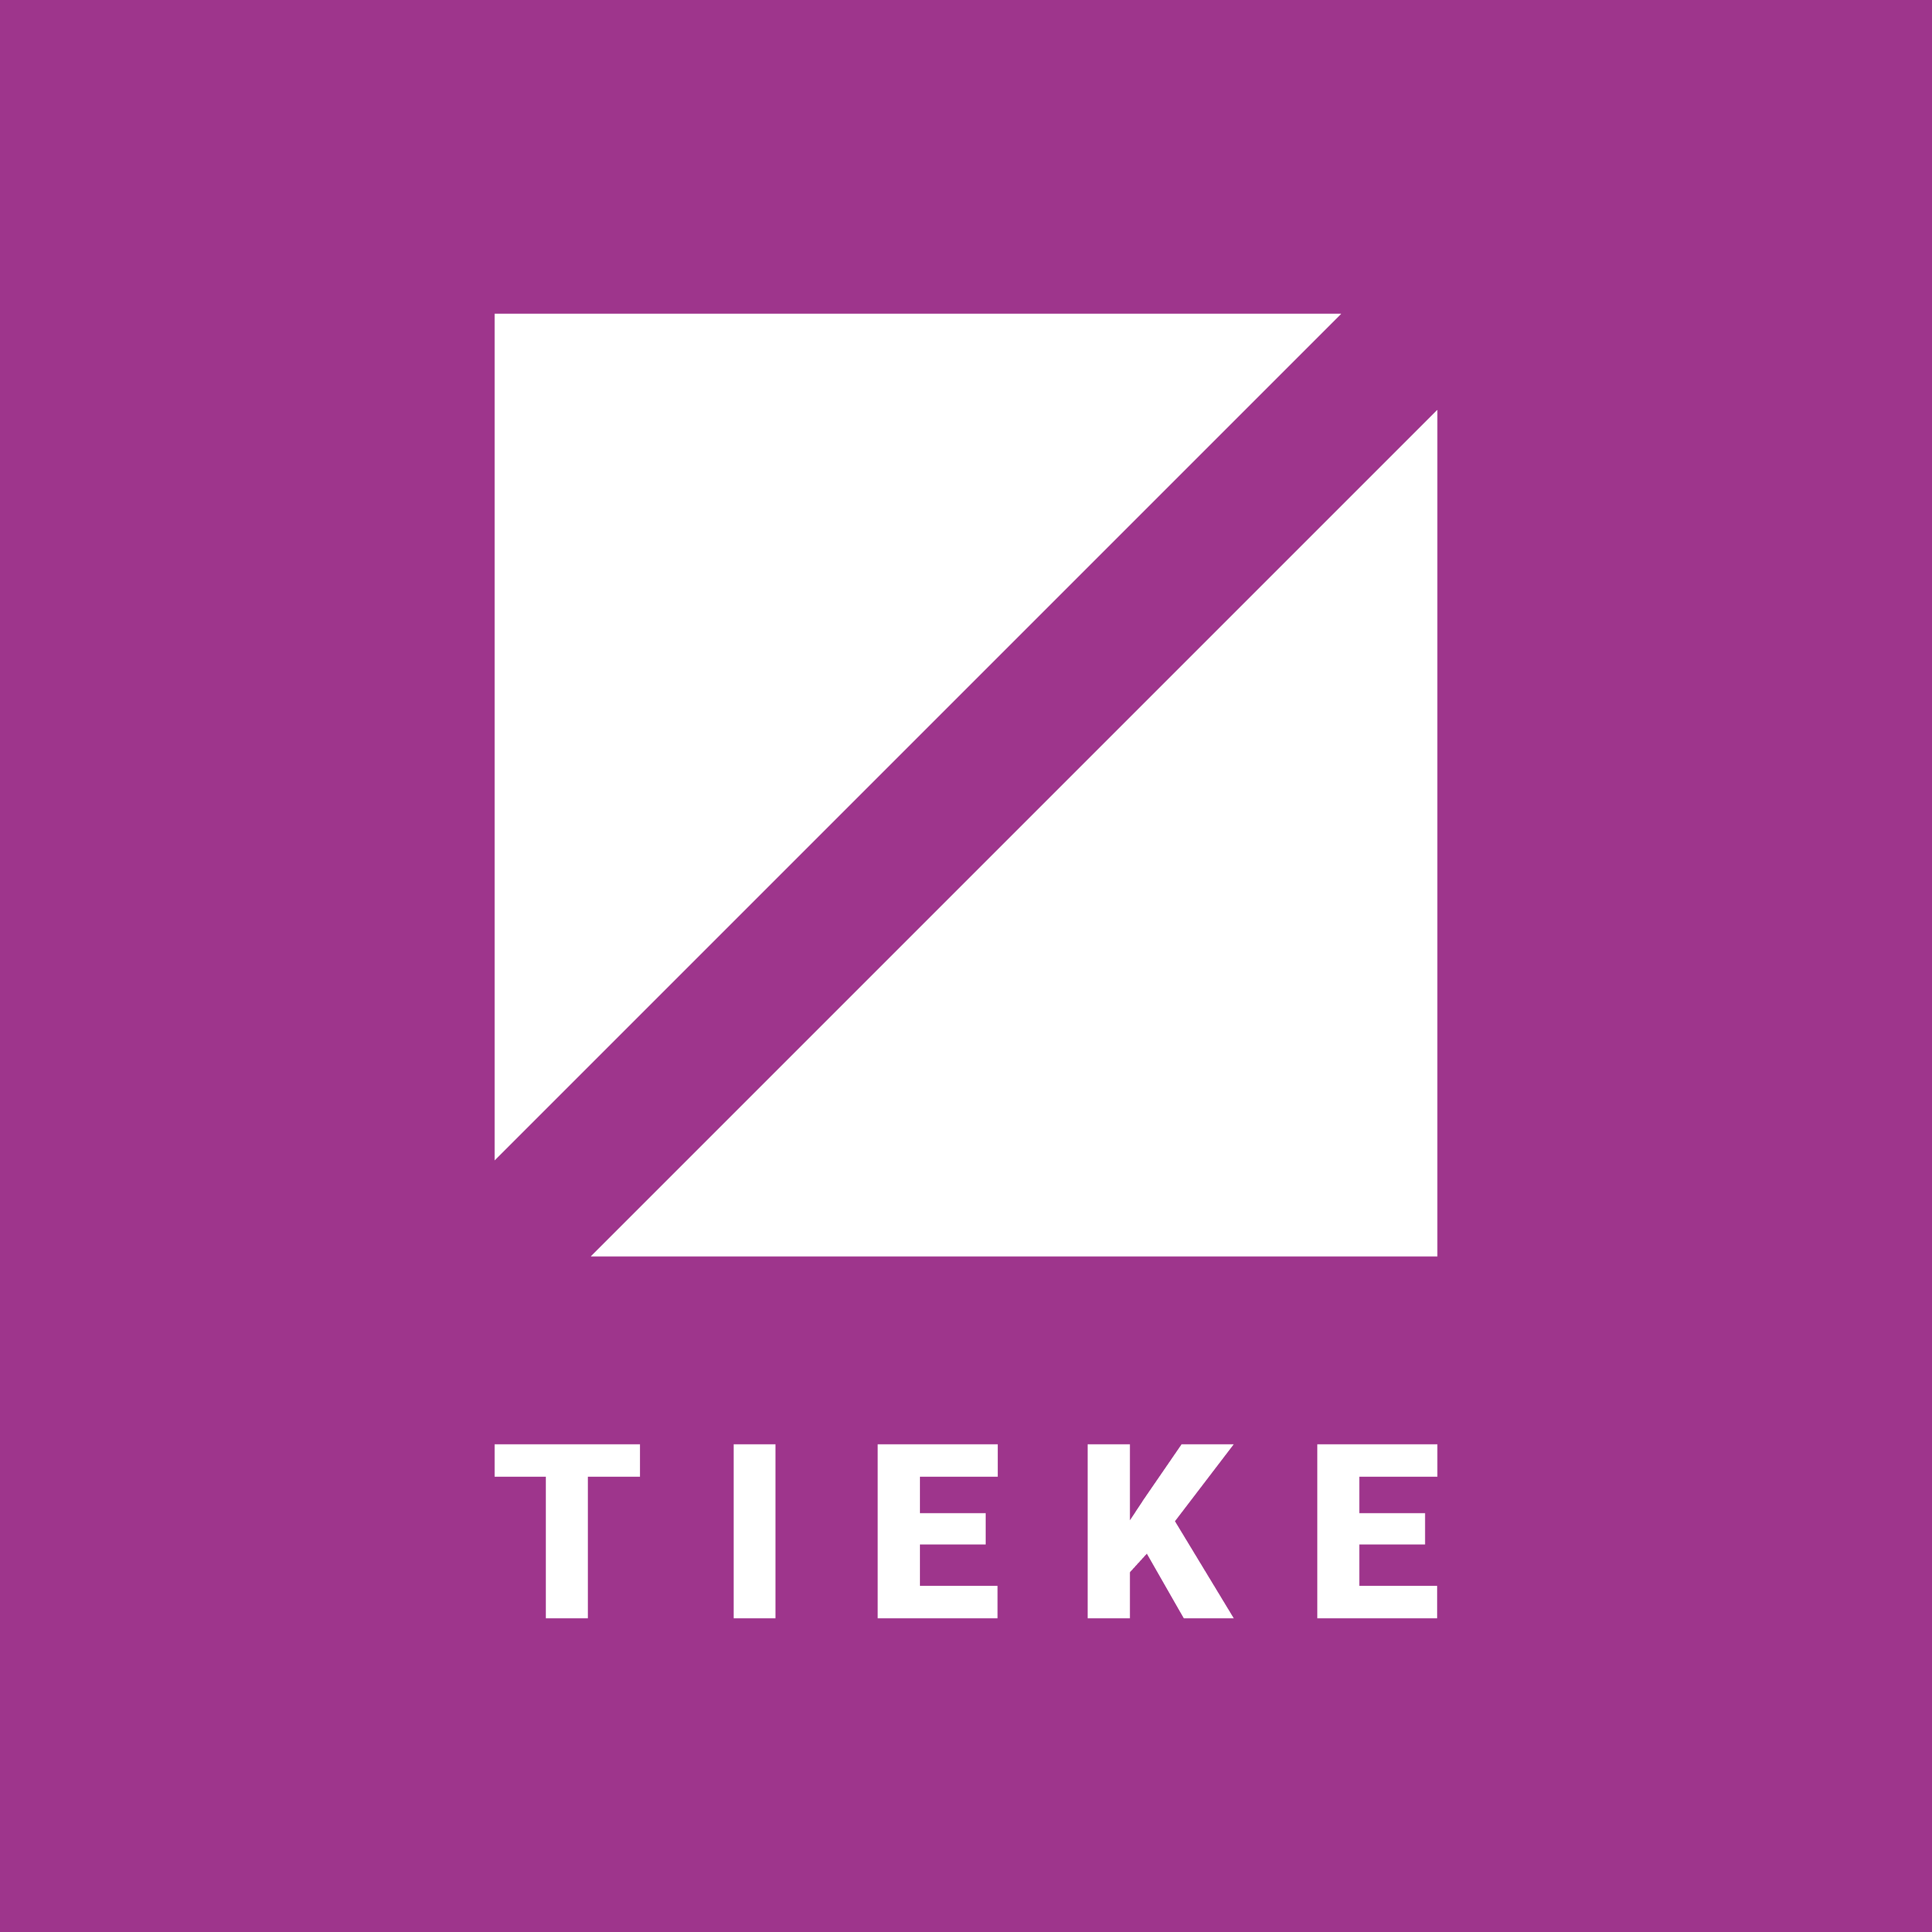 Tieke_logo